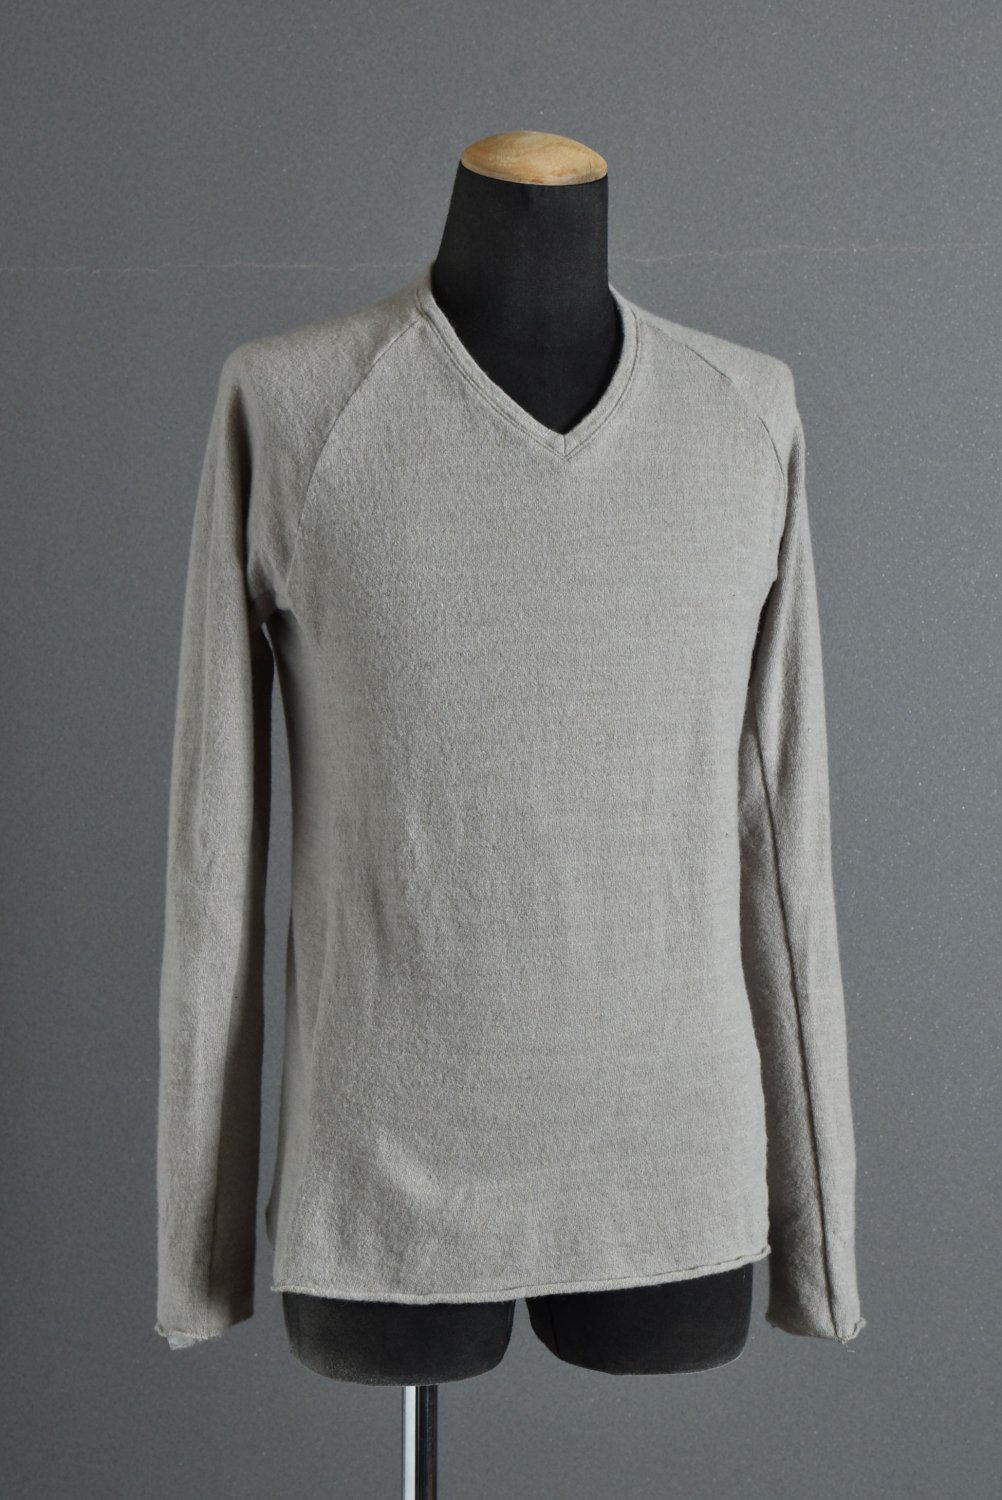 注目ショップ wjk ニット knit neck V linen cotton - ニット/セーター